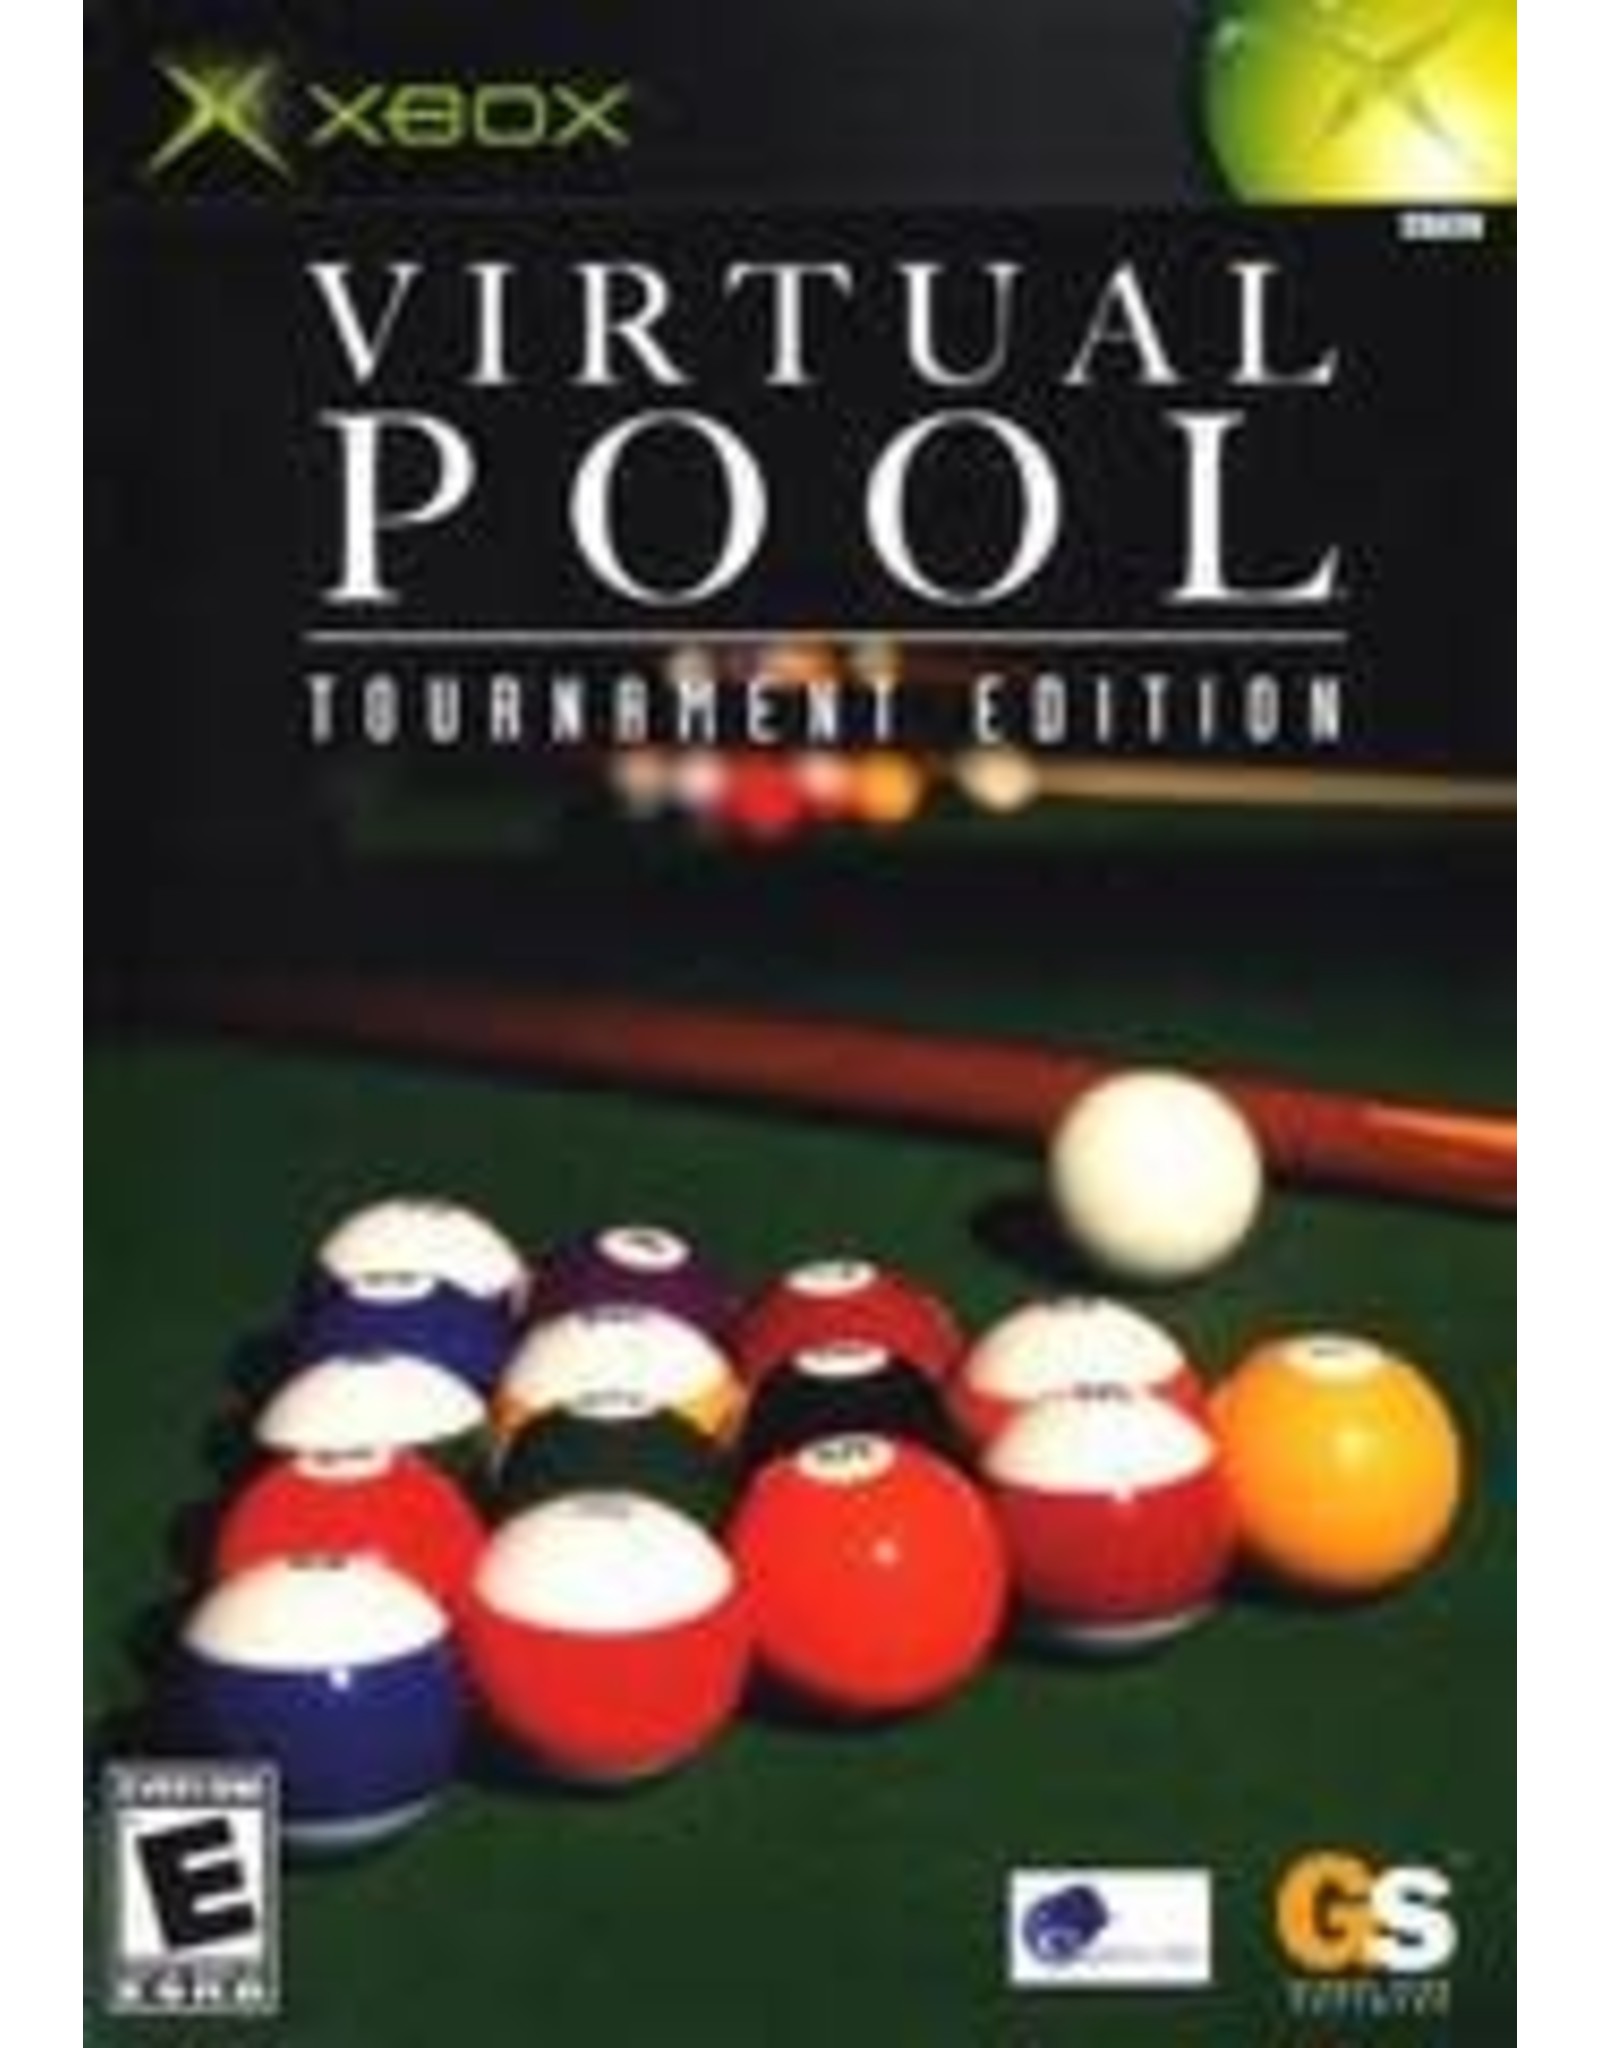 Xbox Virtual Pool Tournament Edition (CiB)